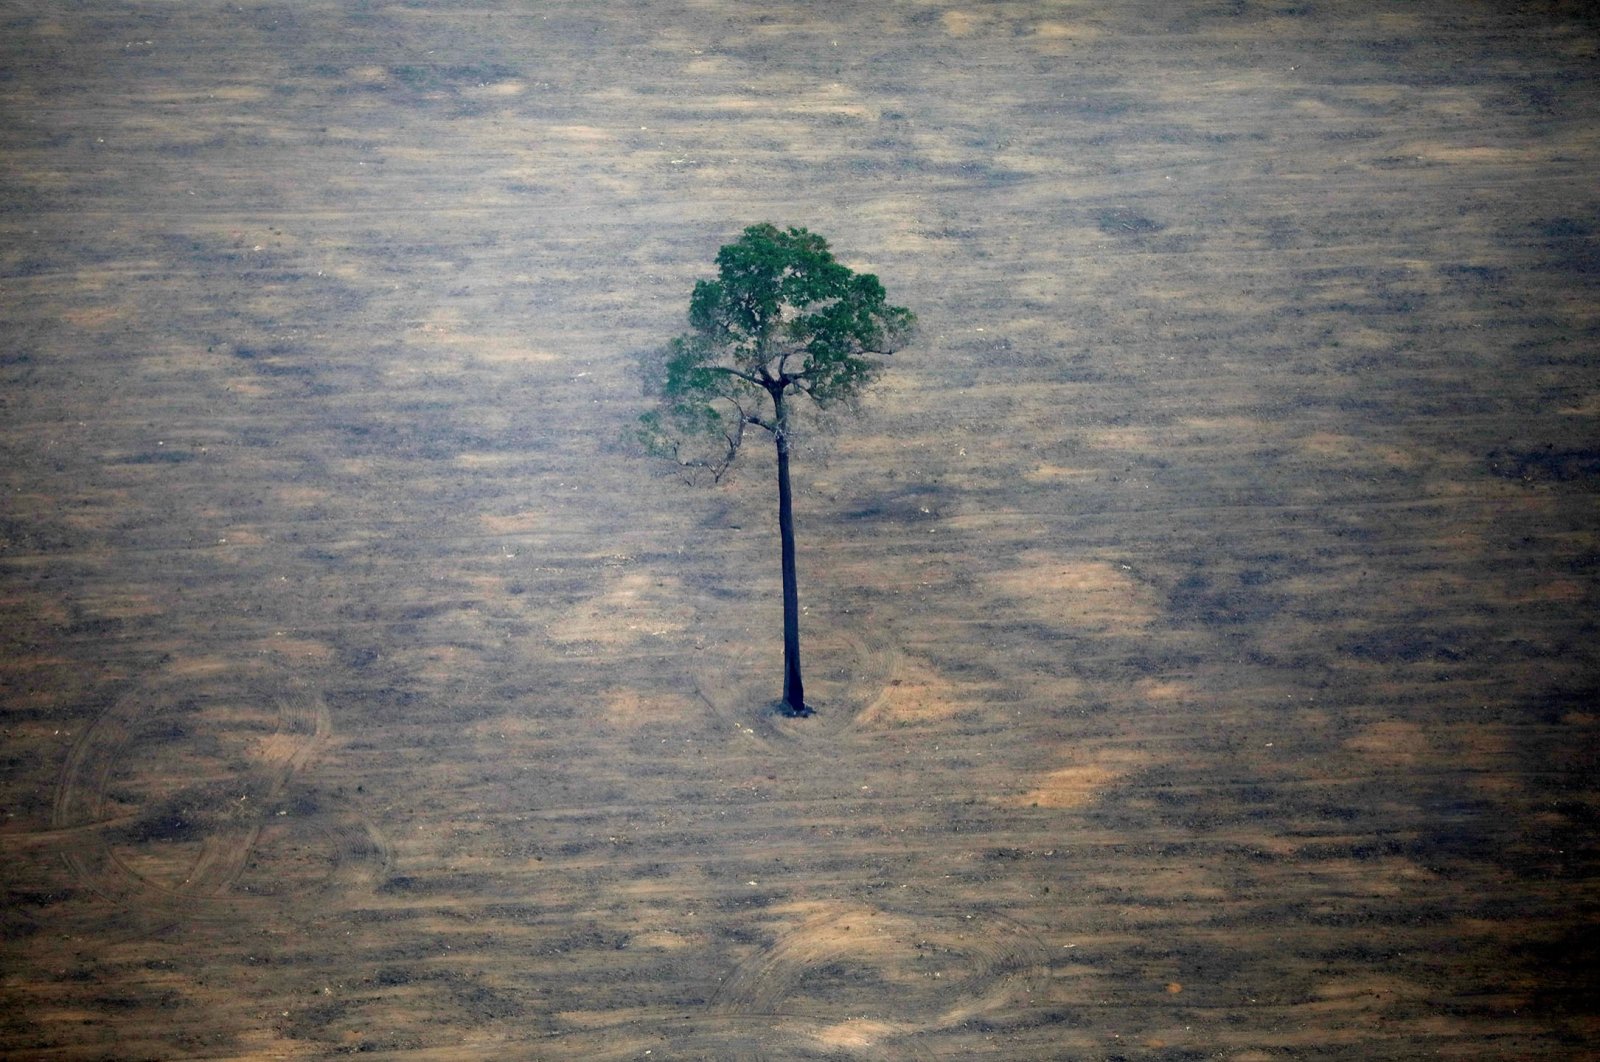 Hutan hujan Amazon mendekati ‘titik kritis’ kematian